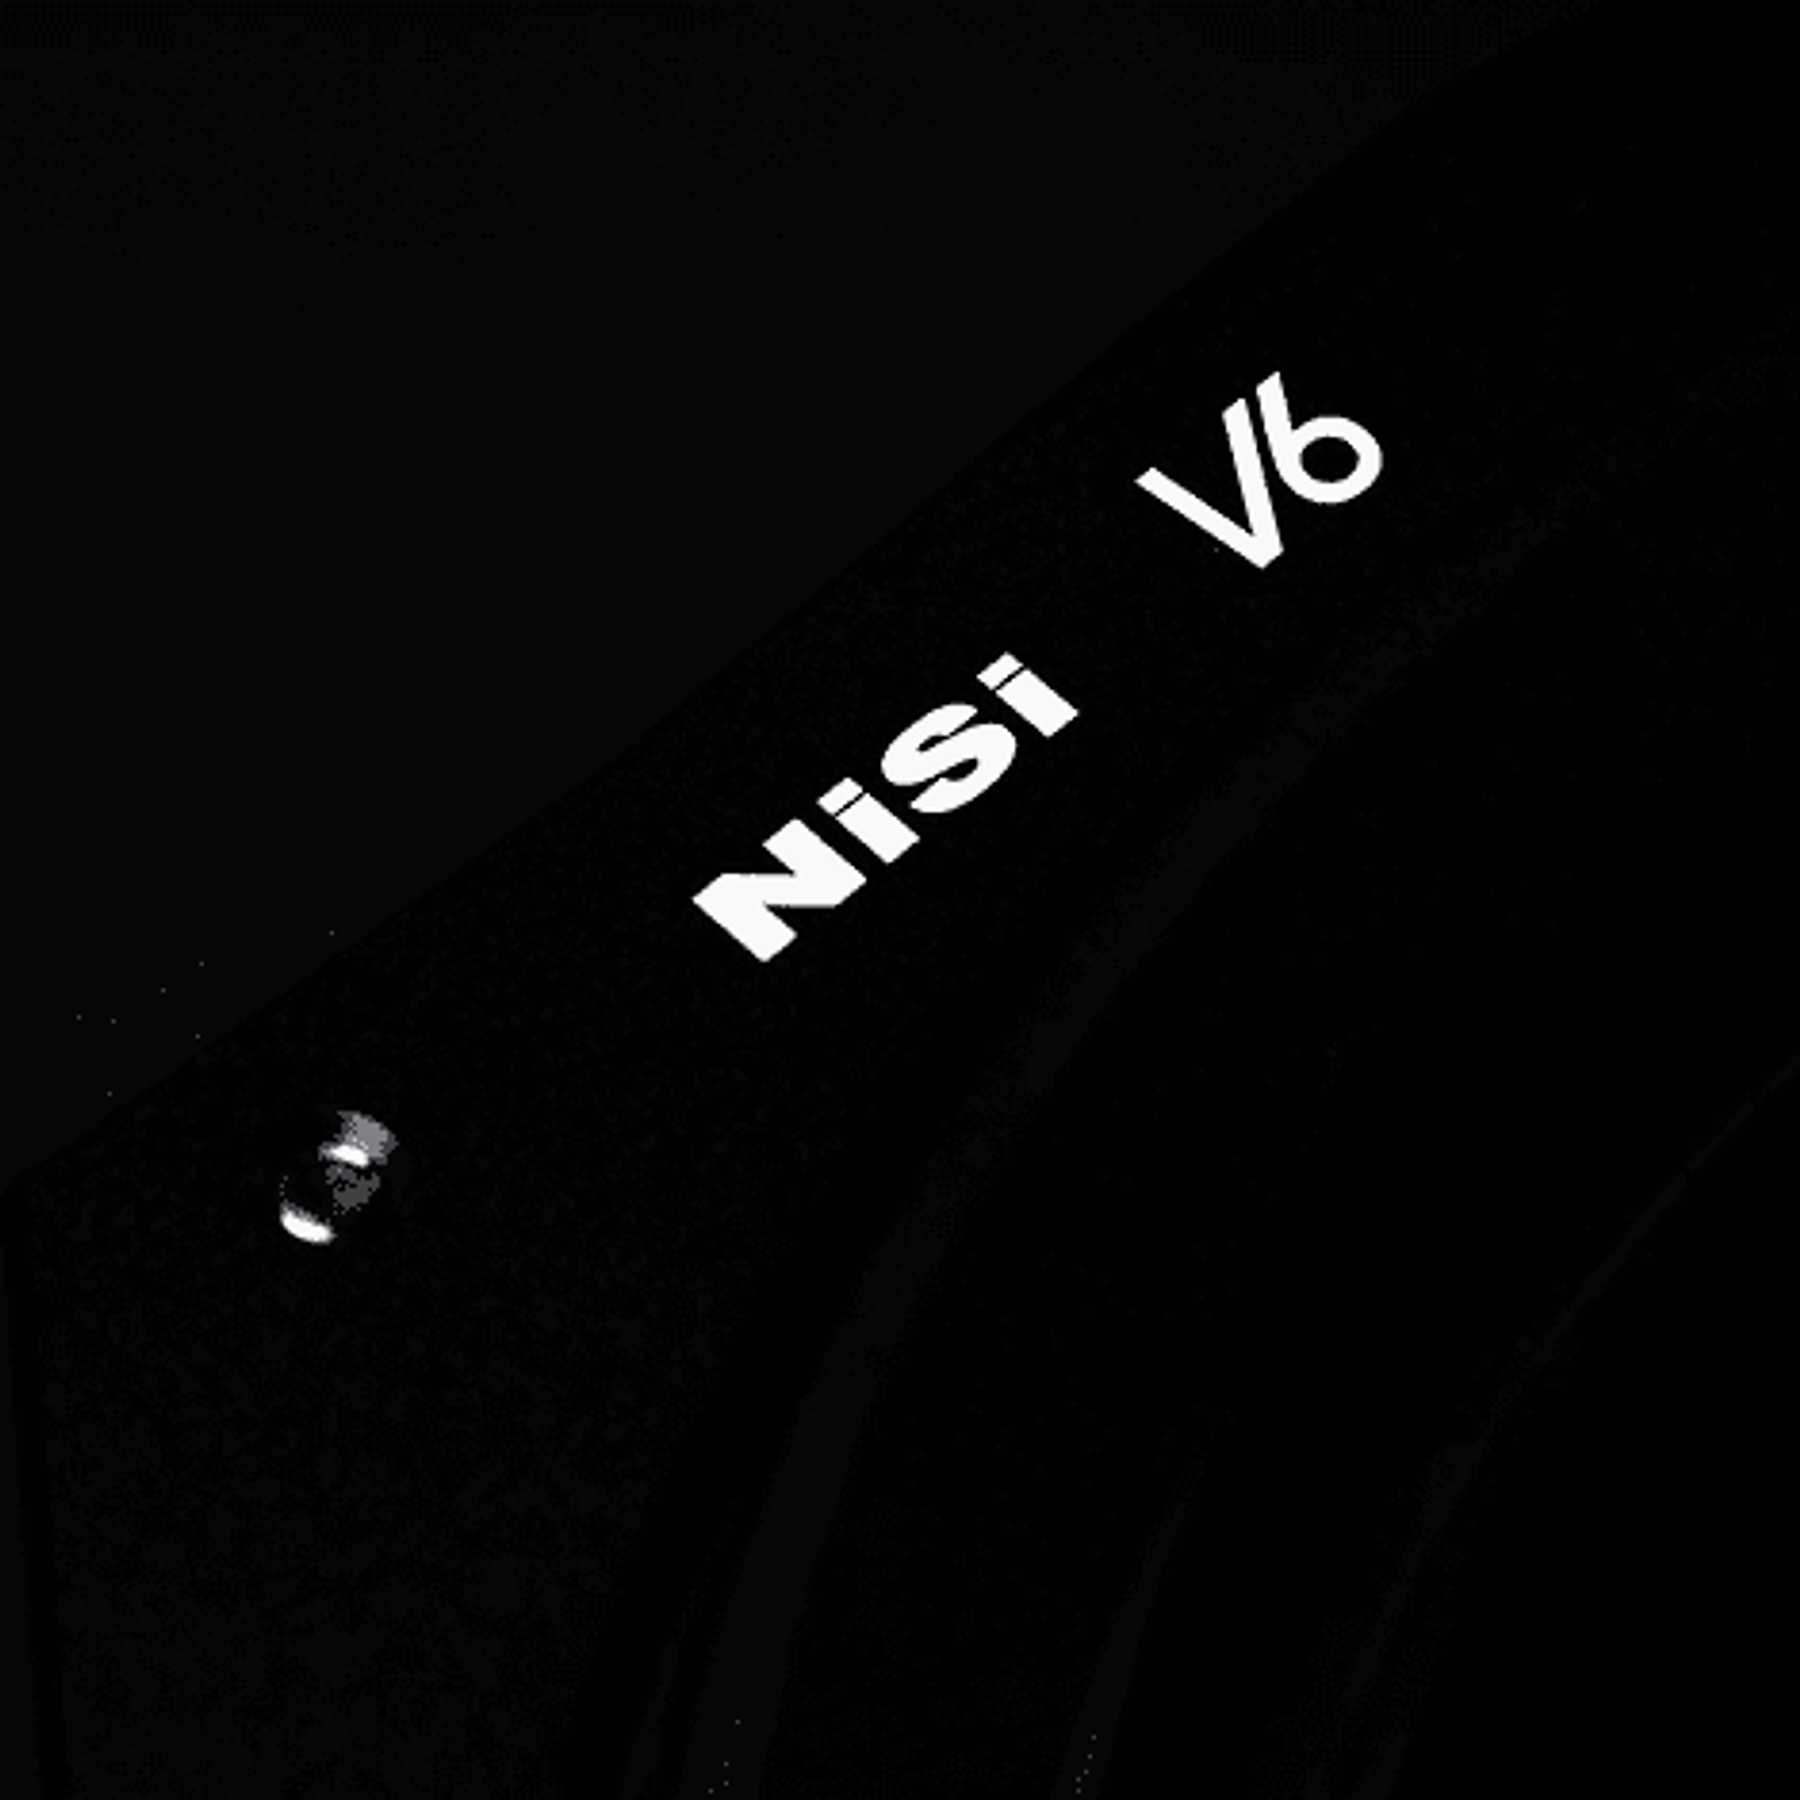 Portafiltros Profesional NiSi 100mm V6 con Polarizador Enhanced Landscape